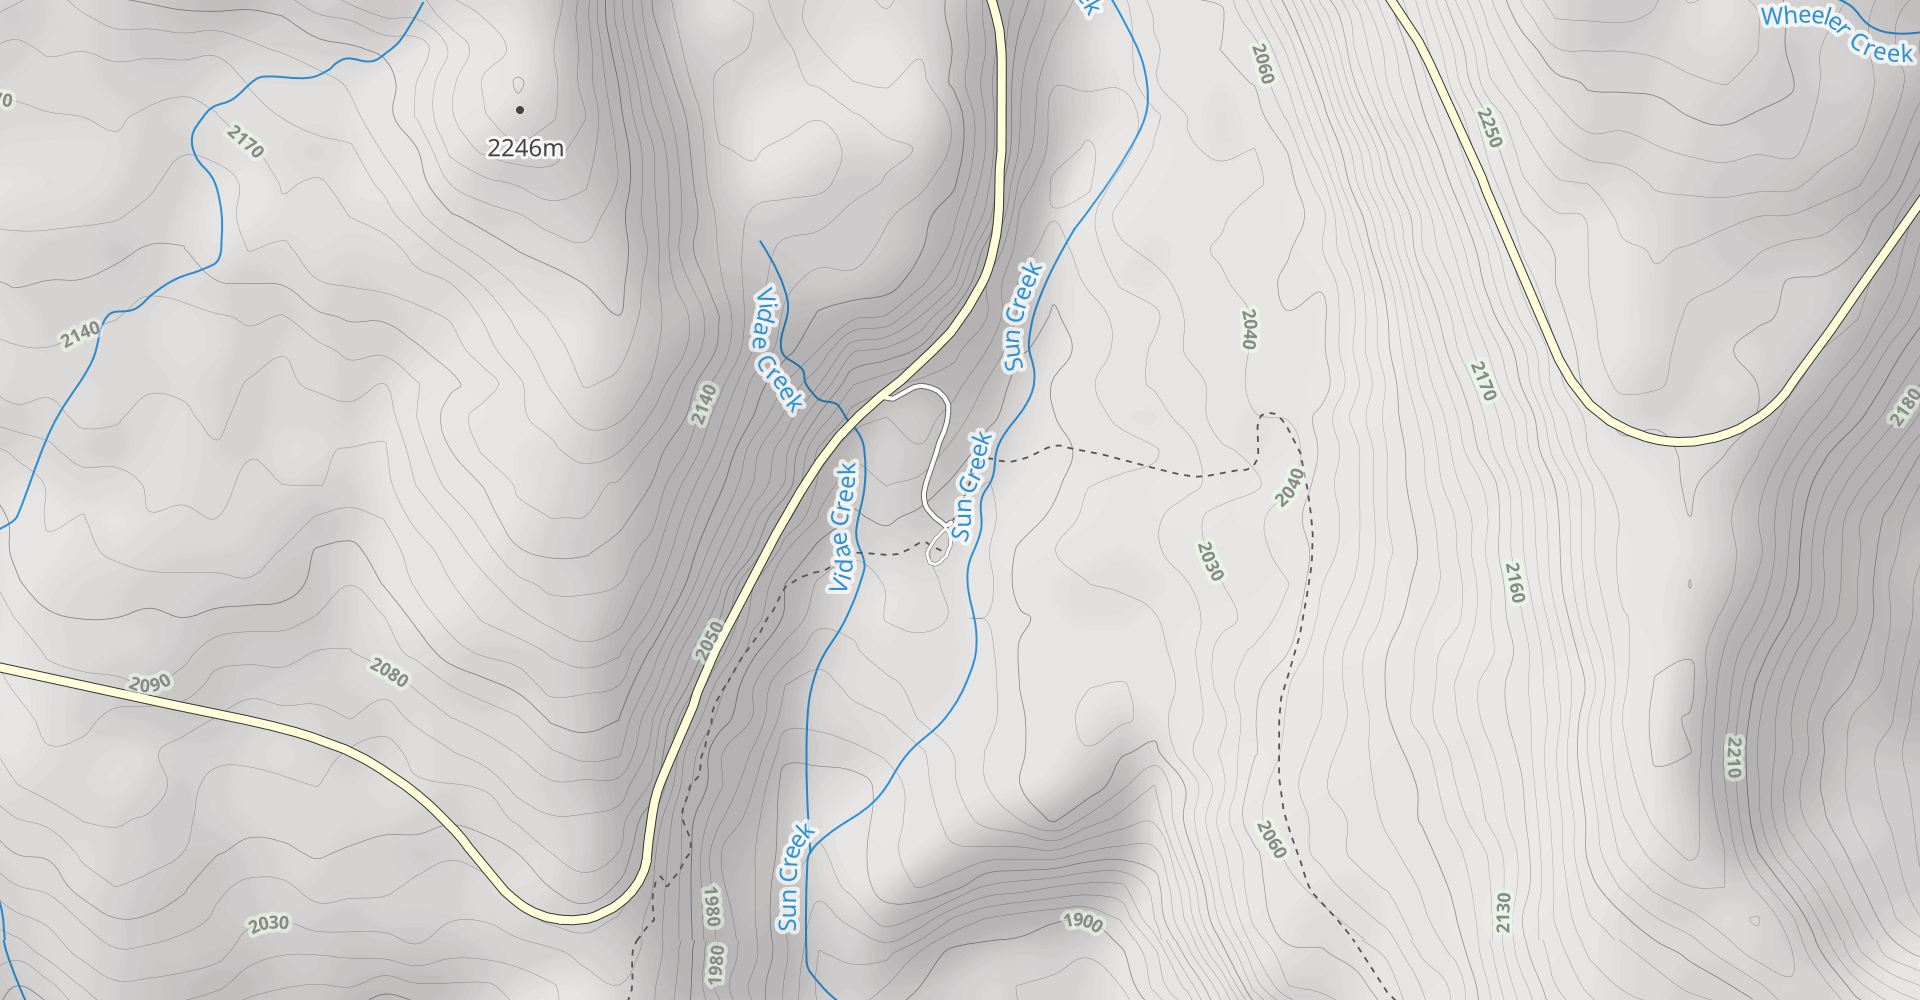 Crater Peak Trail